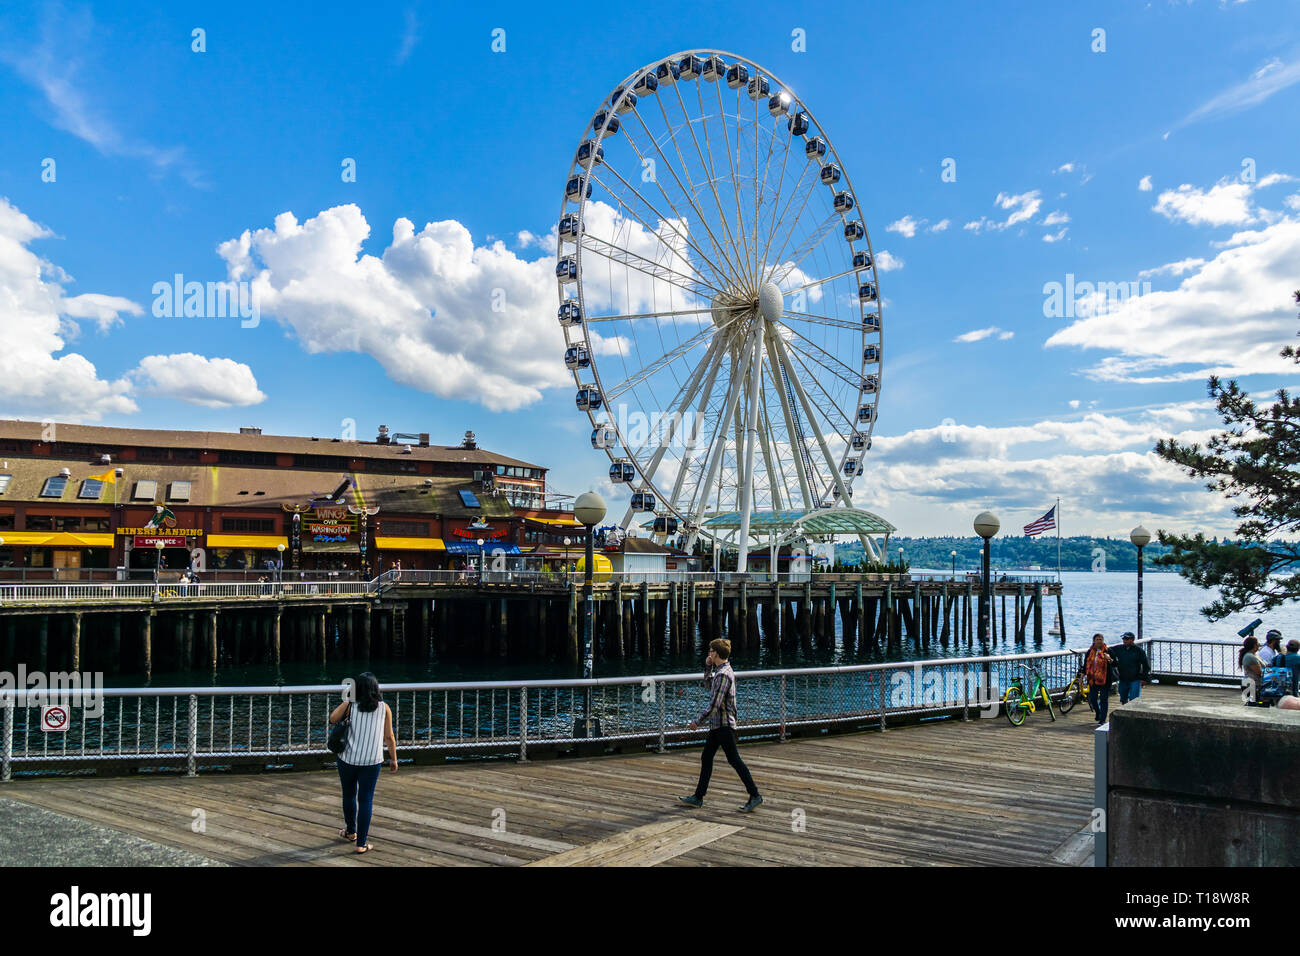 Riesenrad oder große Rad auf ths Seattle Waterfront an einem sonnigen Tag, Elliott Bay, Washington State, USA. Stockfoto